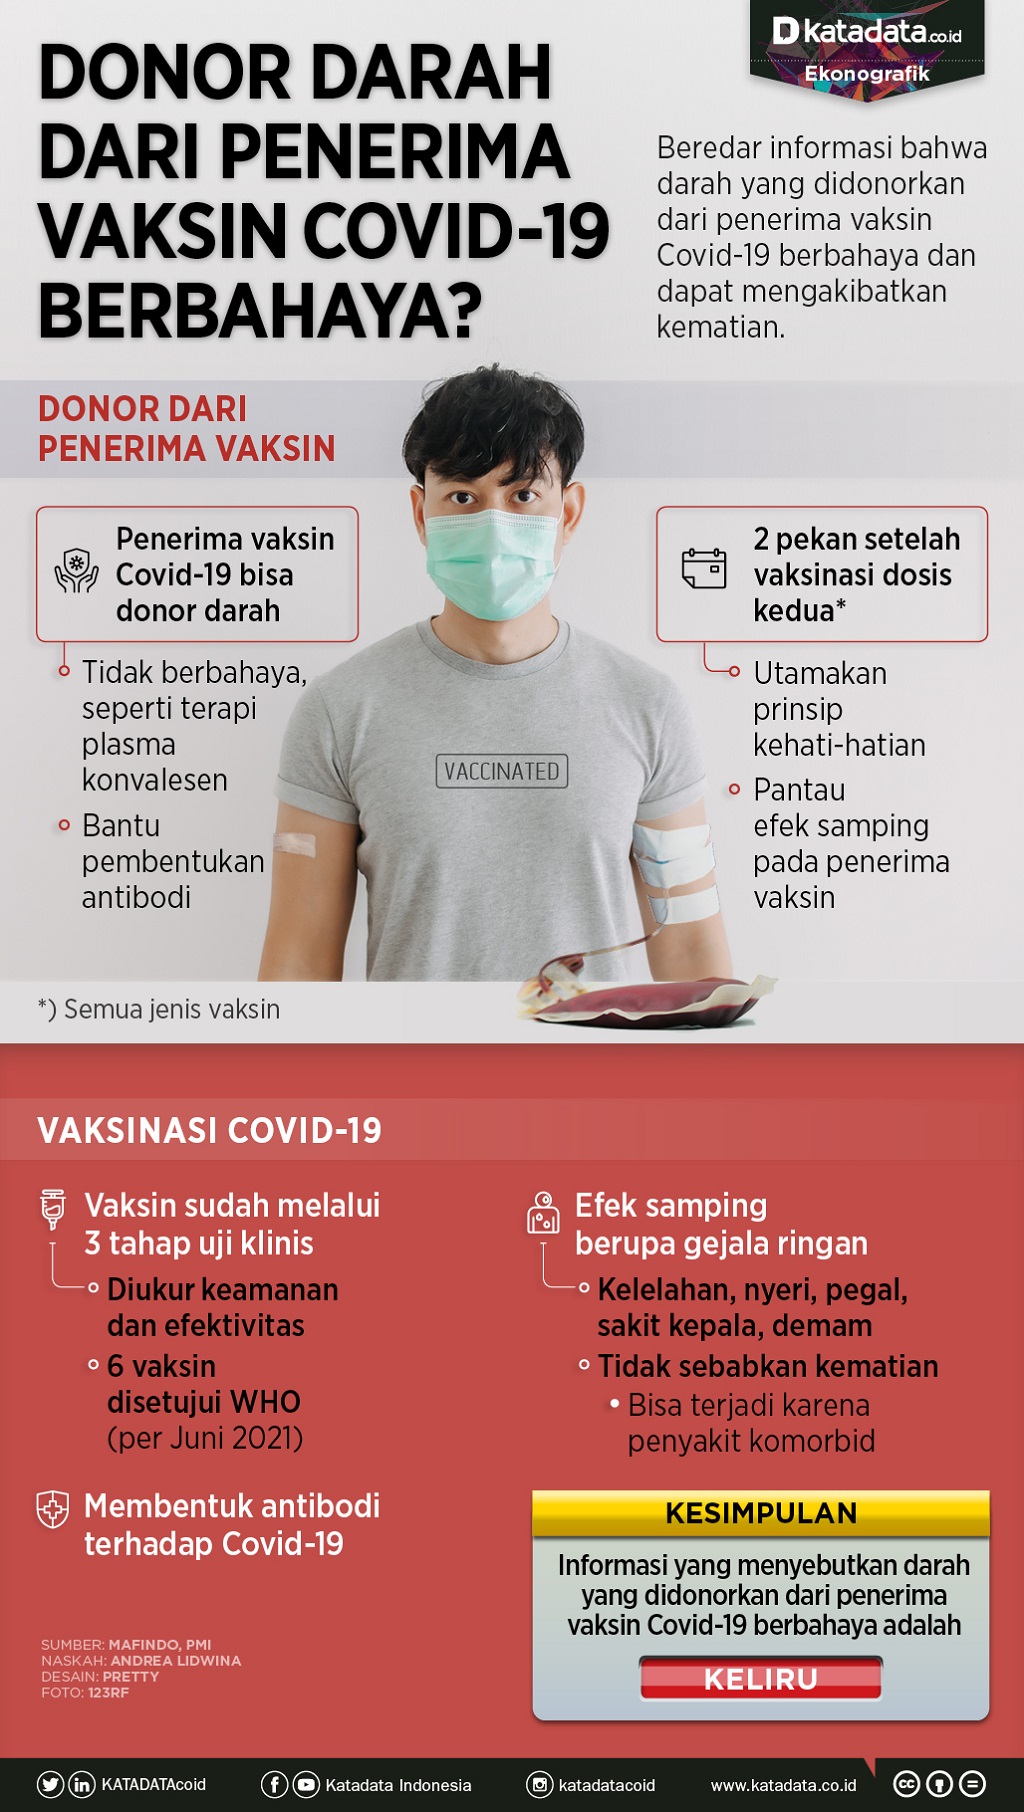 Infografik_Donor darah dari penerima vaksin covid 19 berbahaya